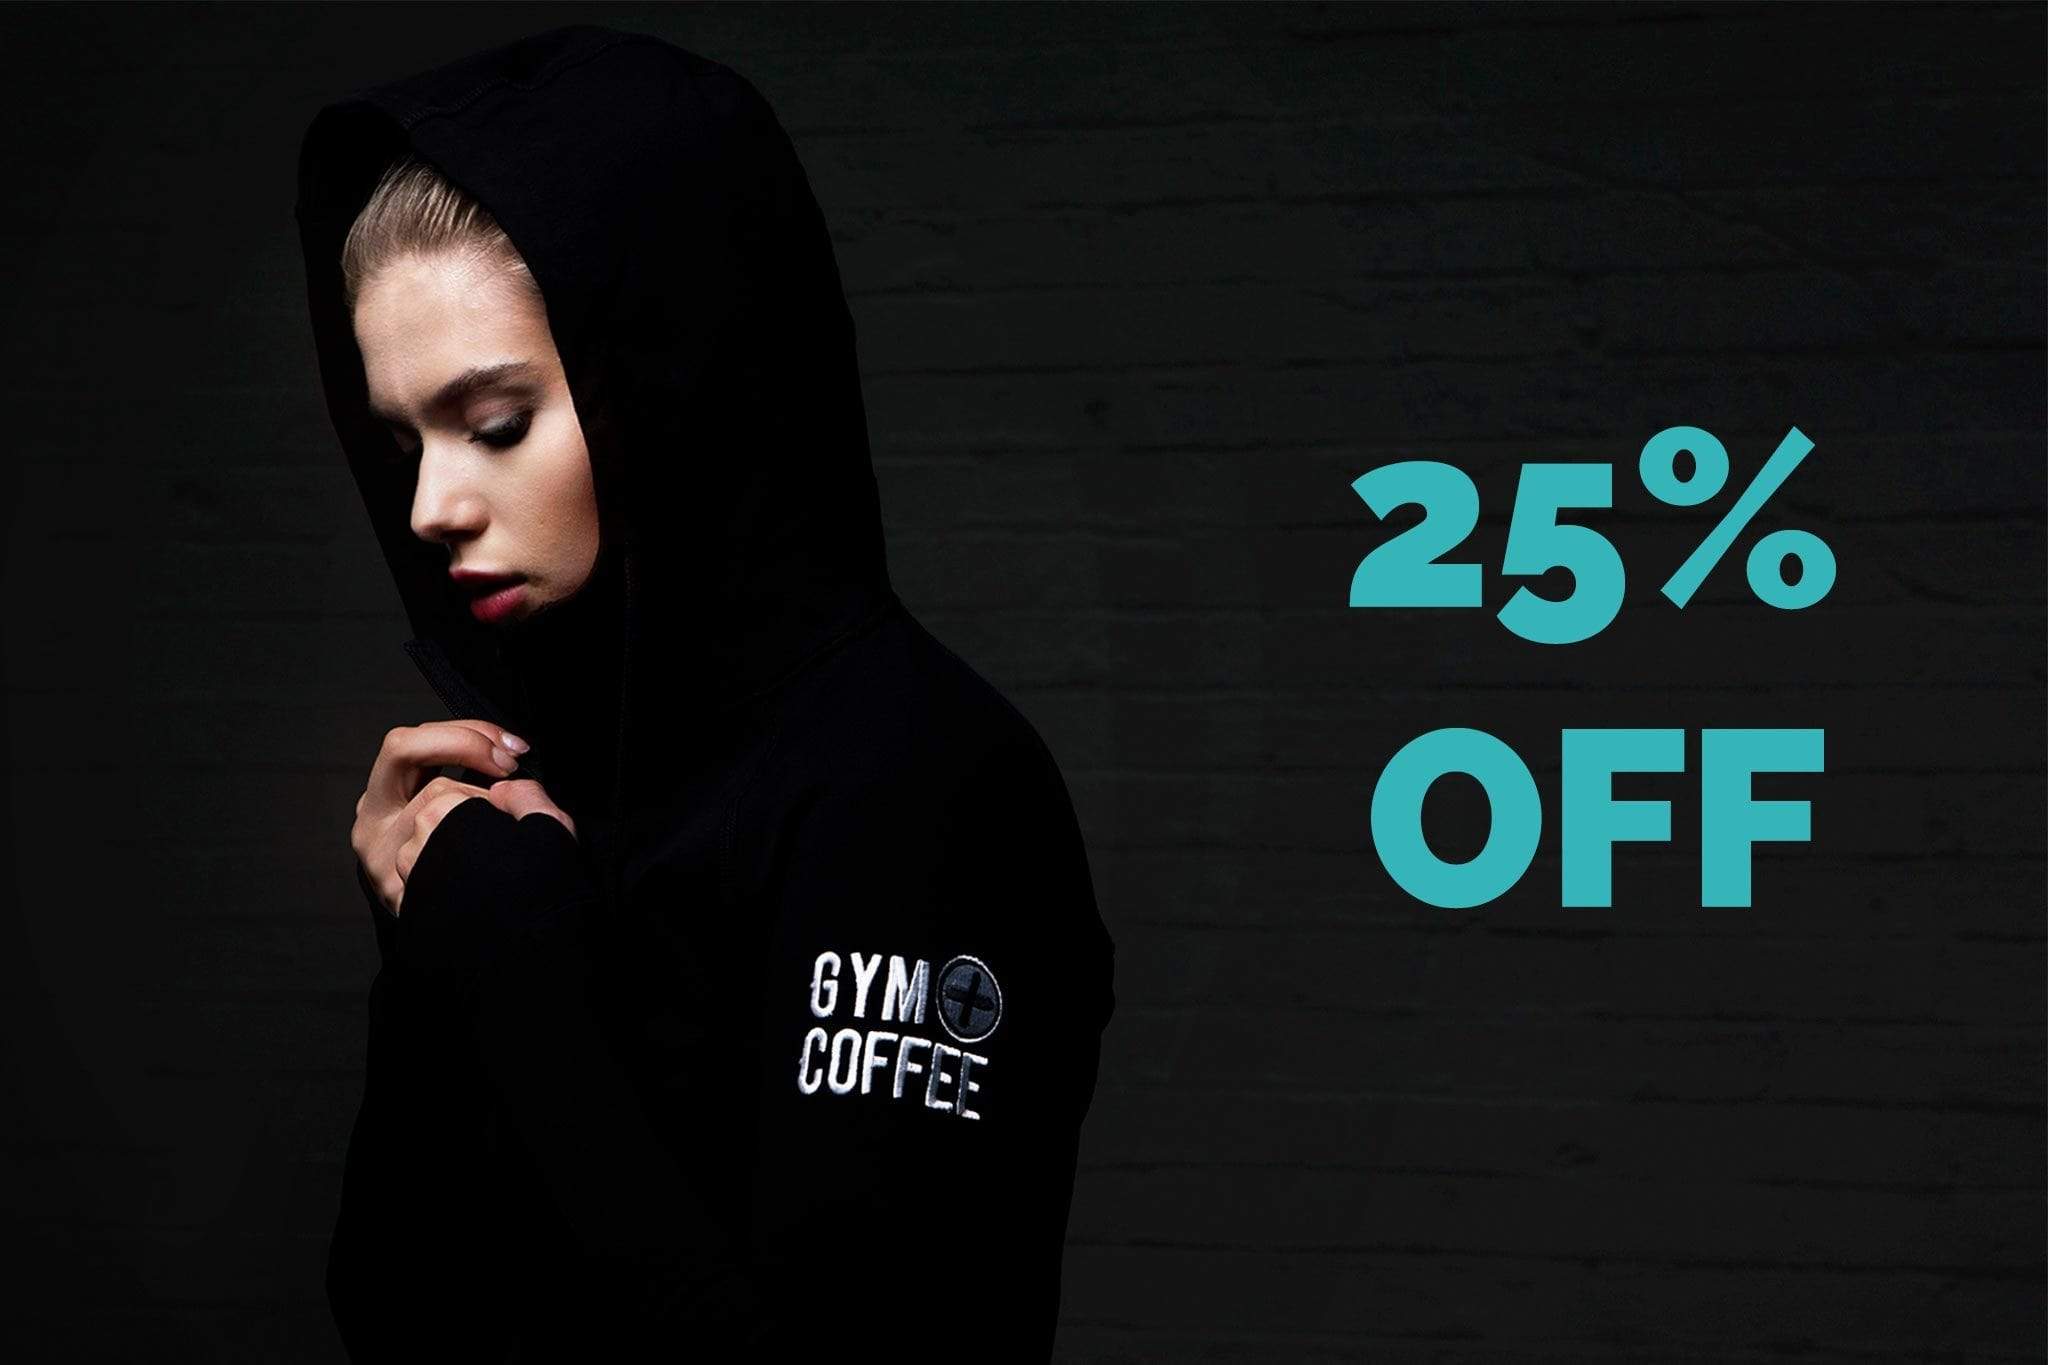 Gym+Coffee 25% Off Deals Black Friday 2019